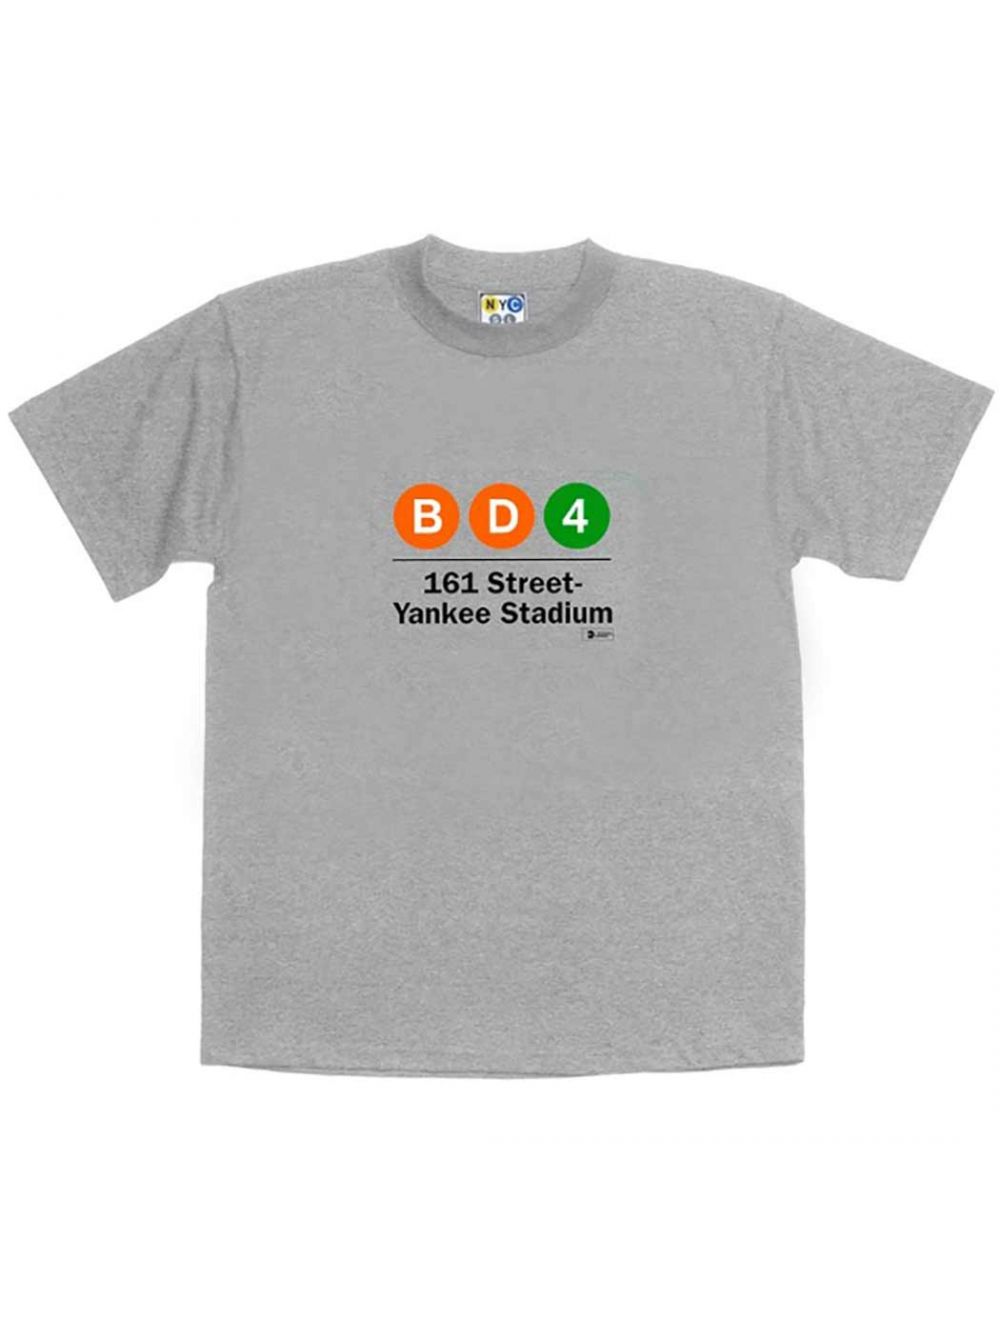 Historic NY YANKEES Subway Series T shirt- New